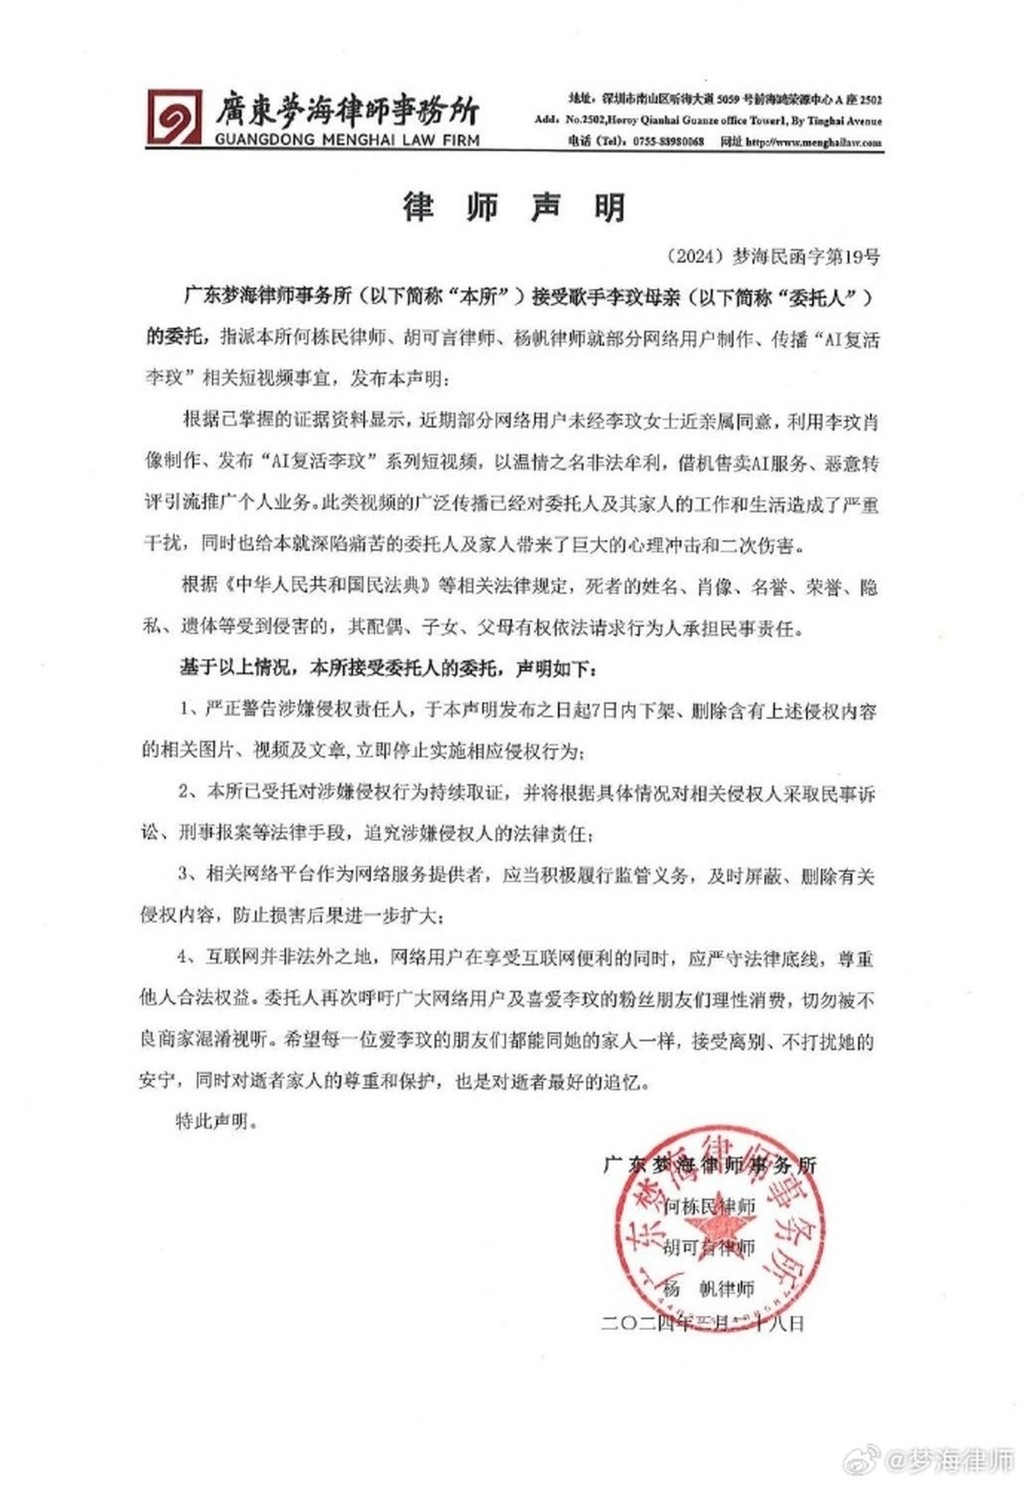 广东梦海律师事务所接受李玟母亲的委托声明全文。